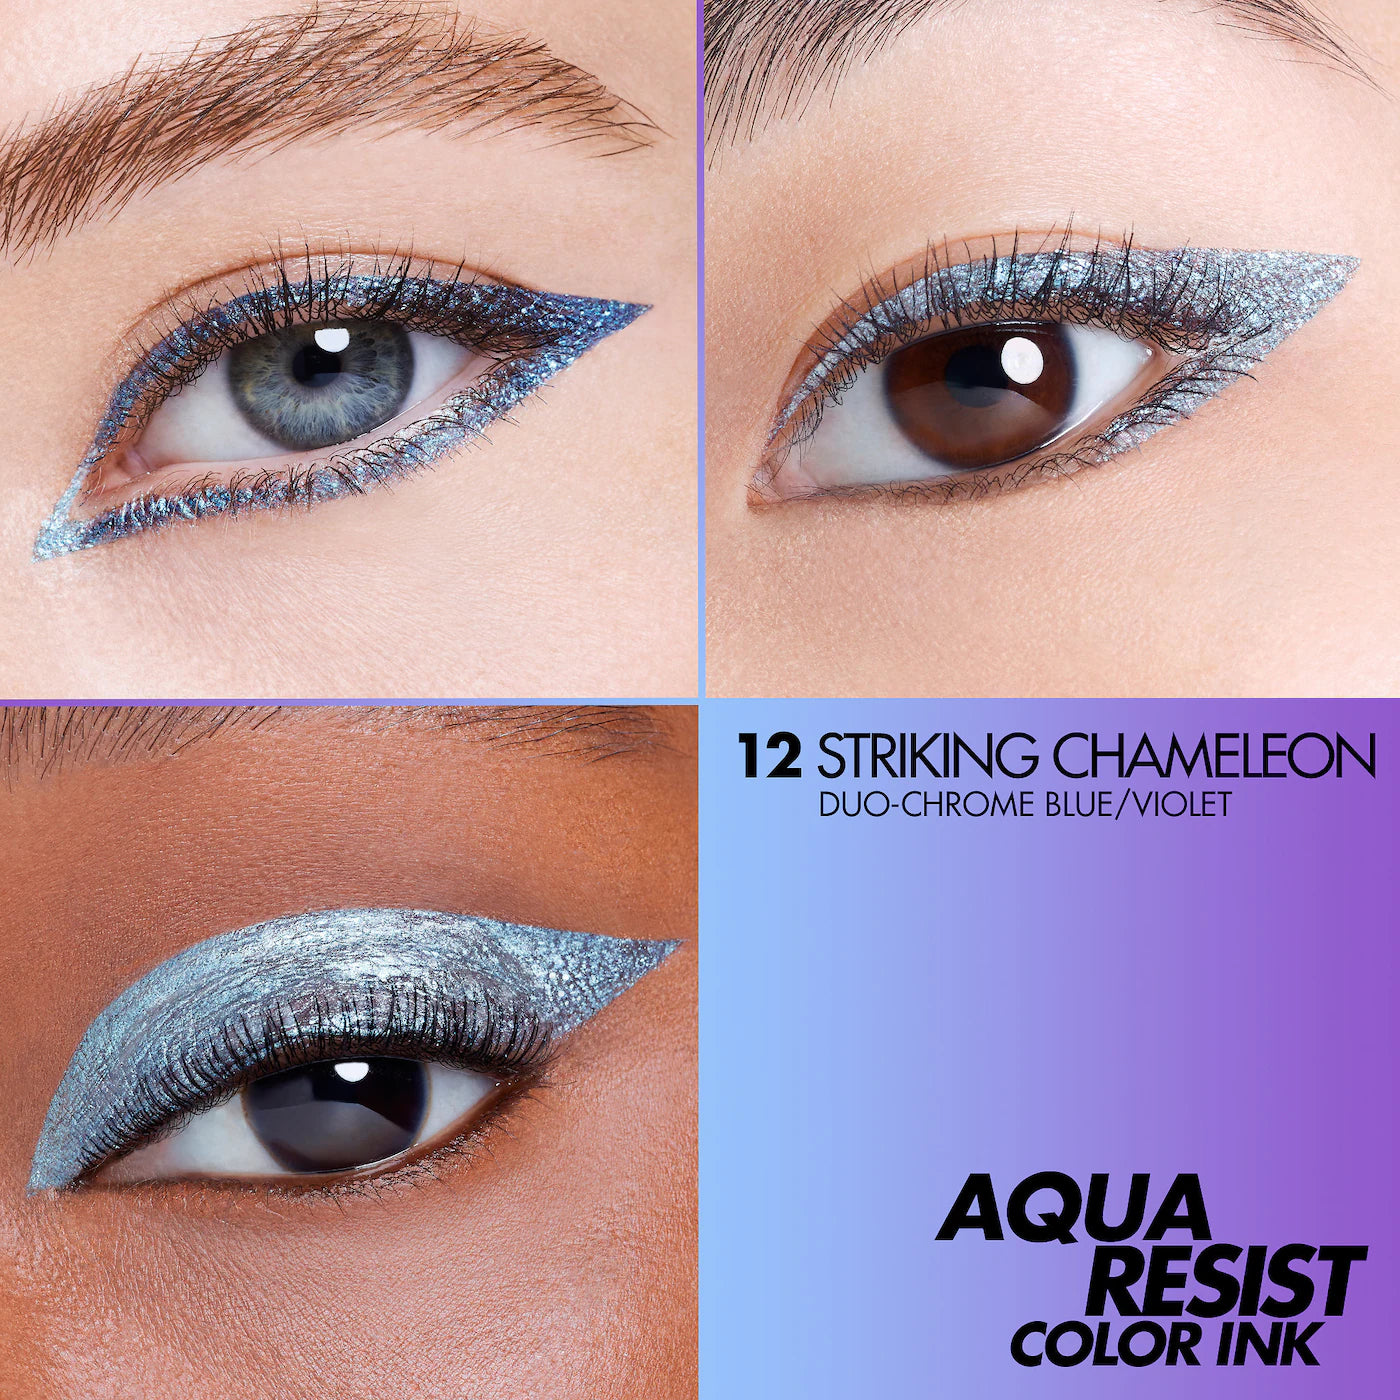 Aqua Resist Color Ink 24hr Waterproof